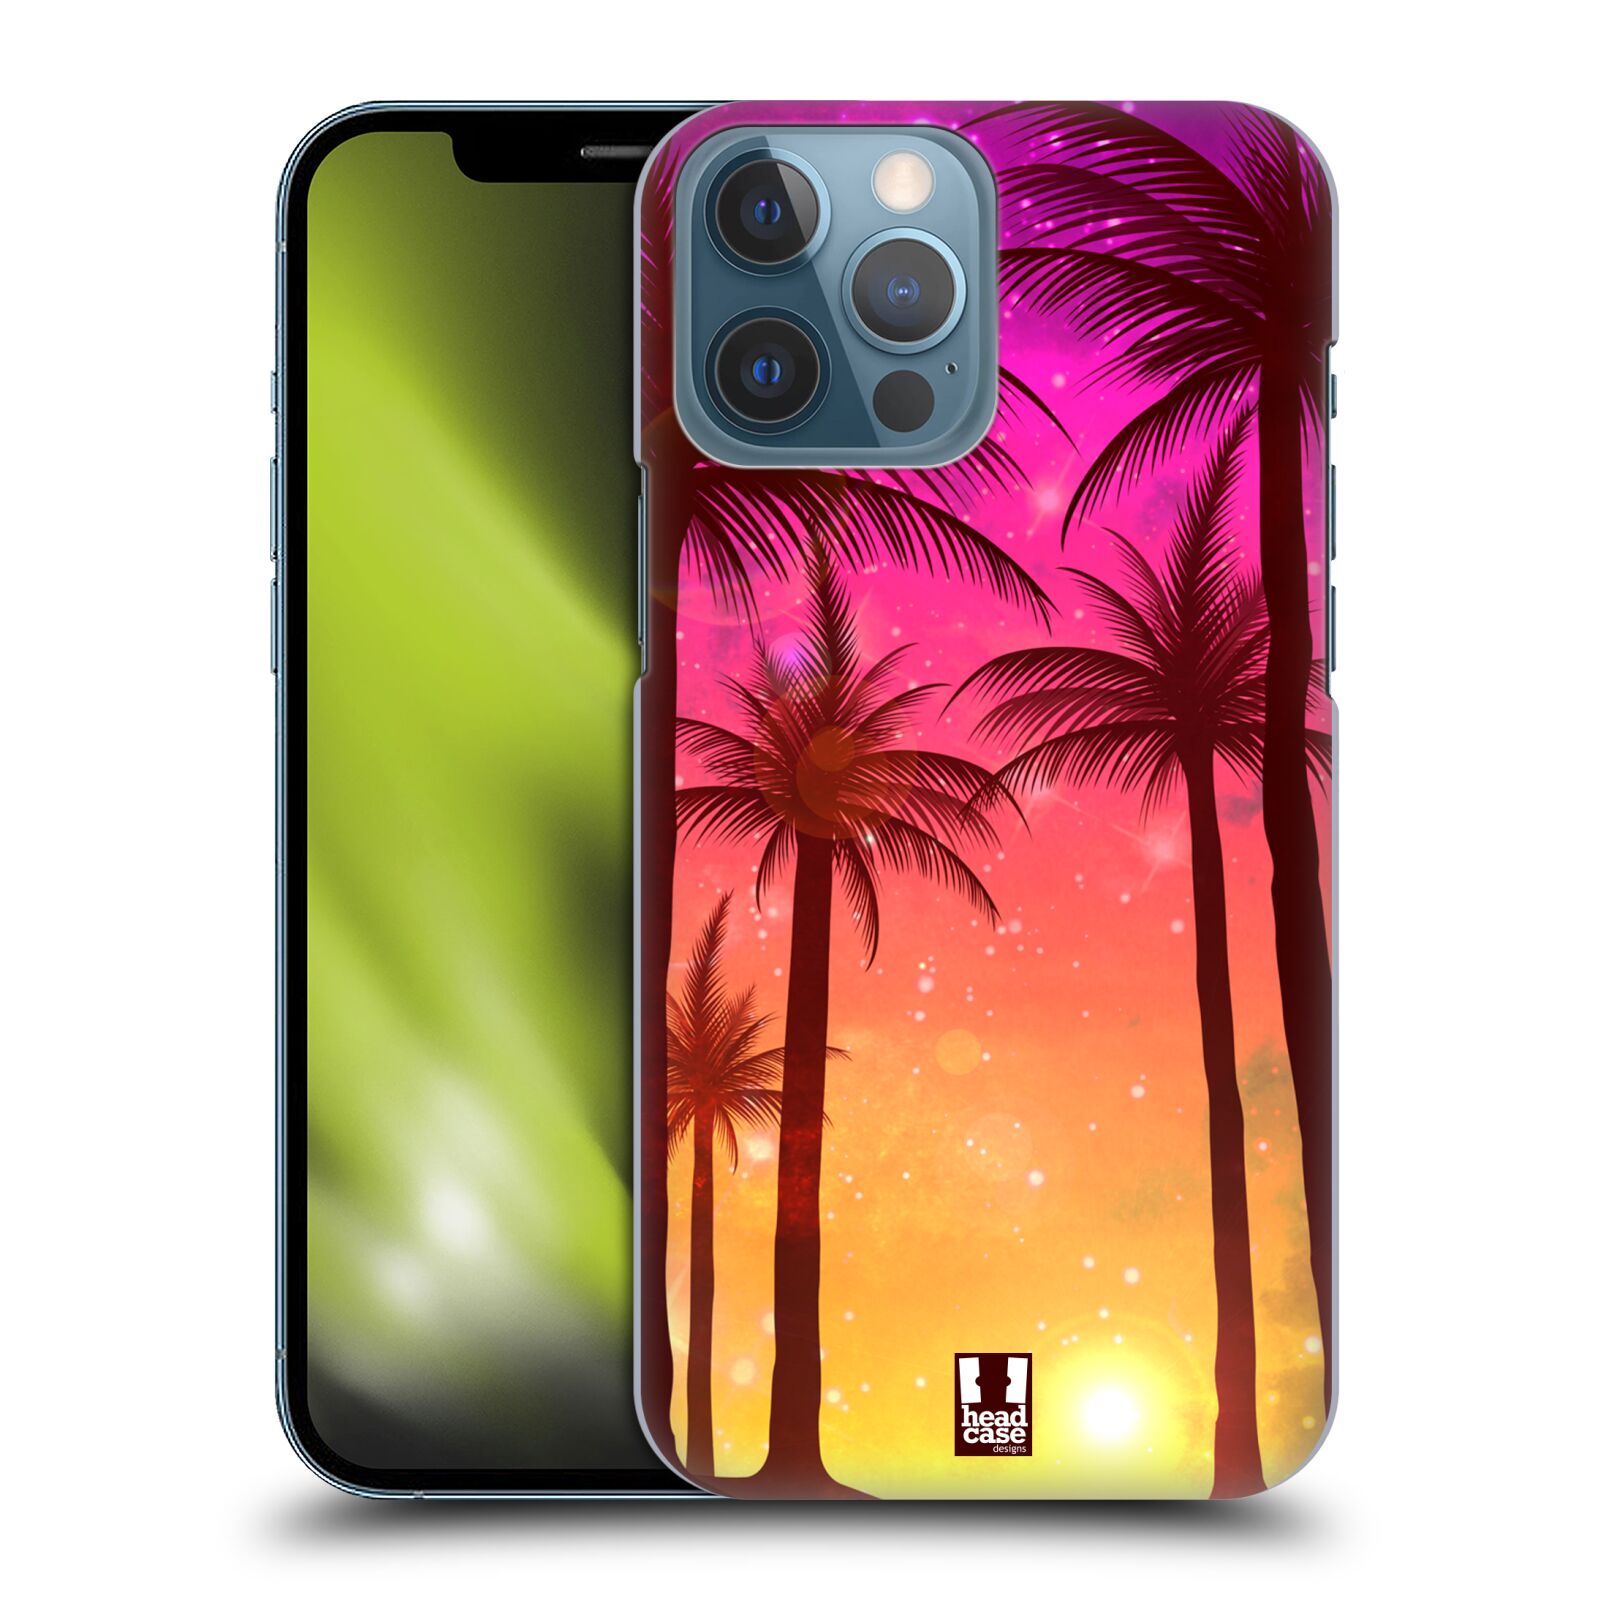 Plastový obal HEAD CASE na mobil Apple Iphone 13 PRO MAX vzor Kreslený motiv silueta moře a palmy RŮŽOVÁ